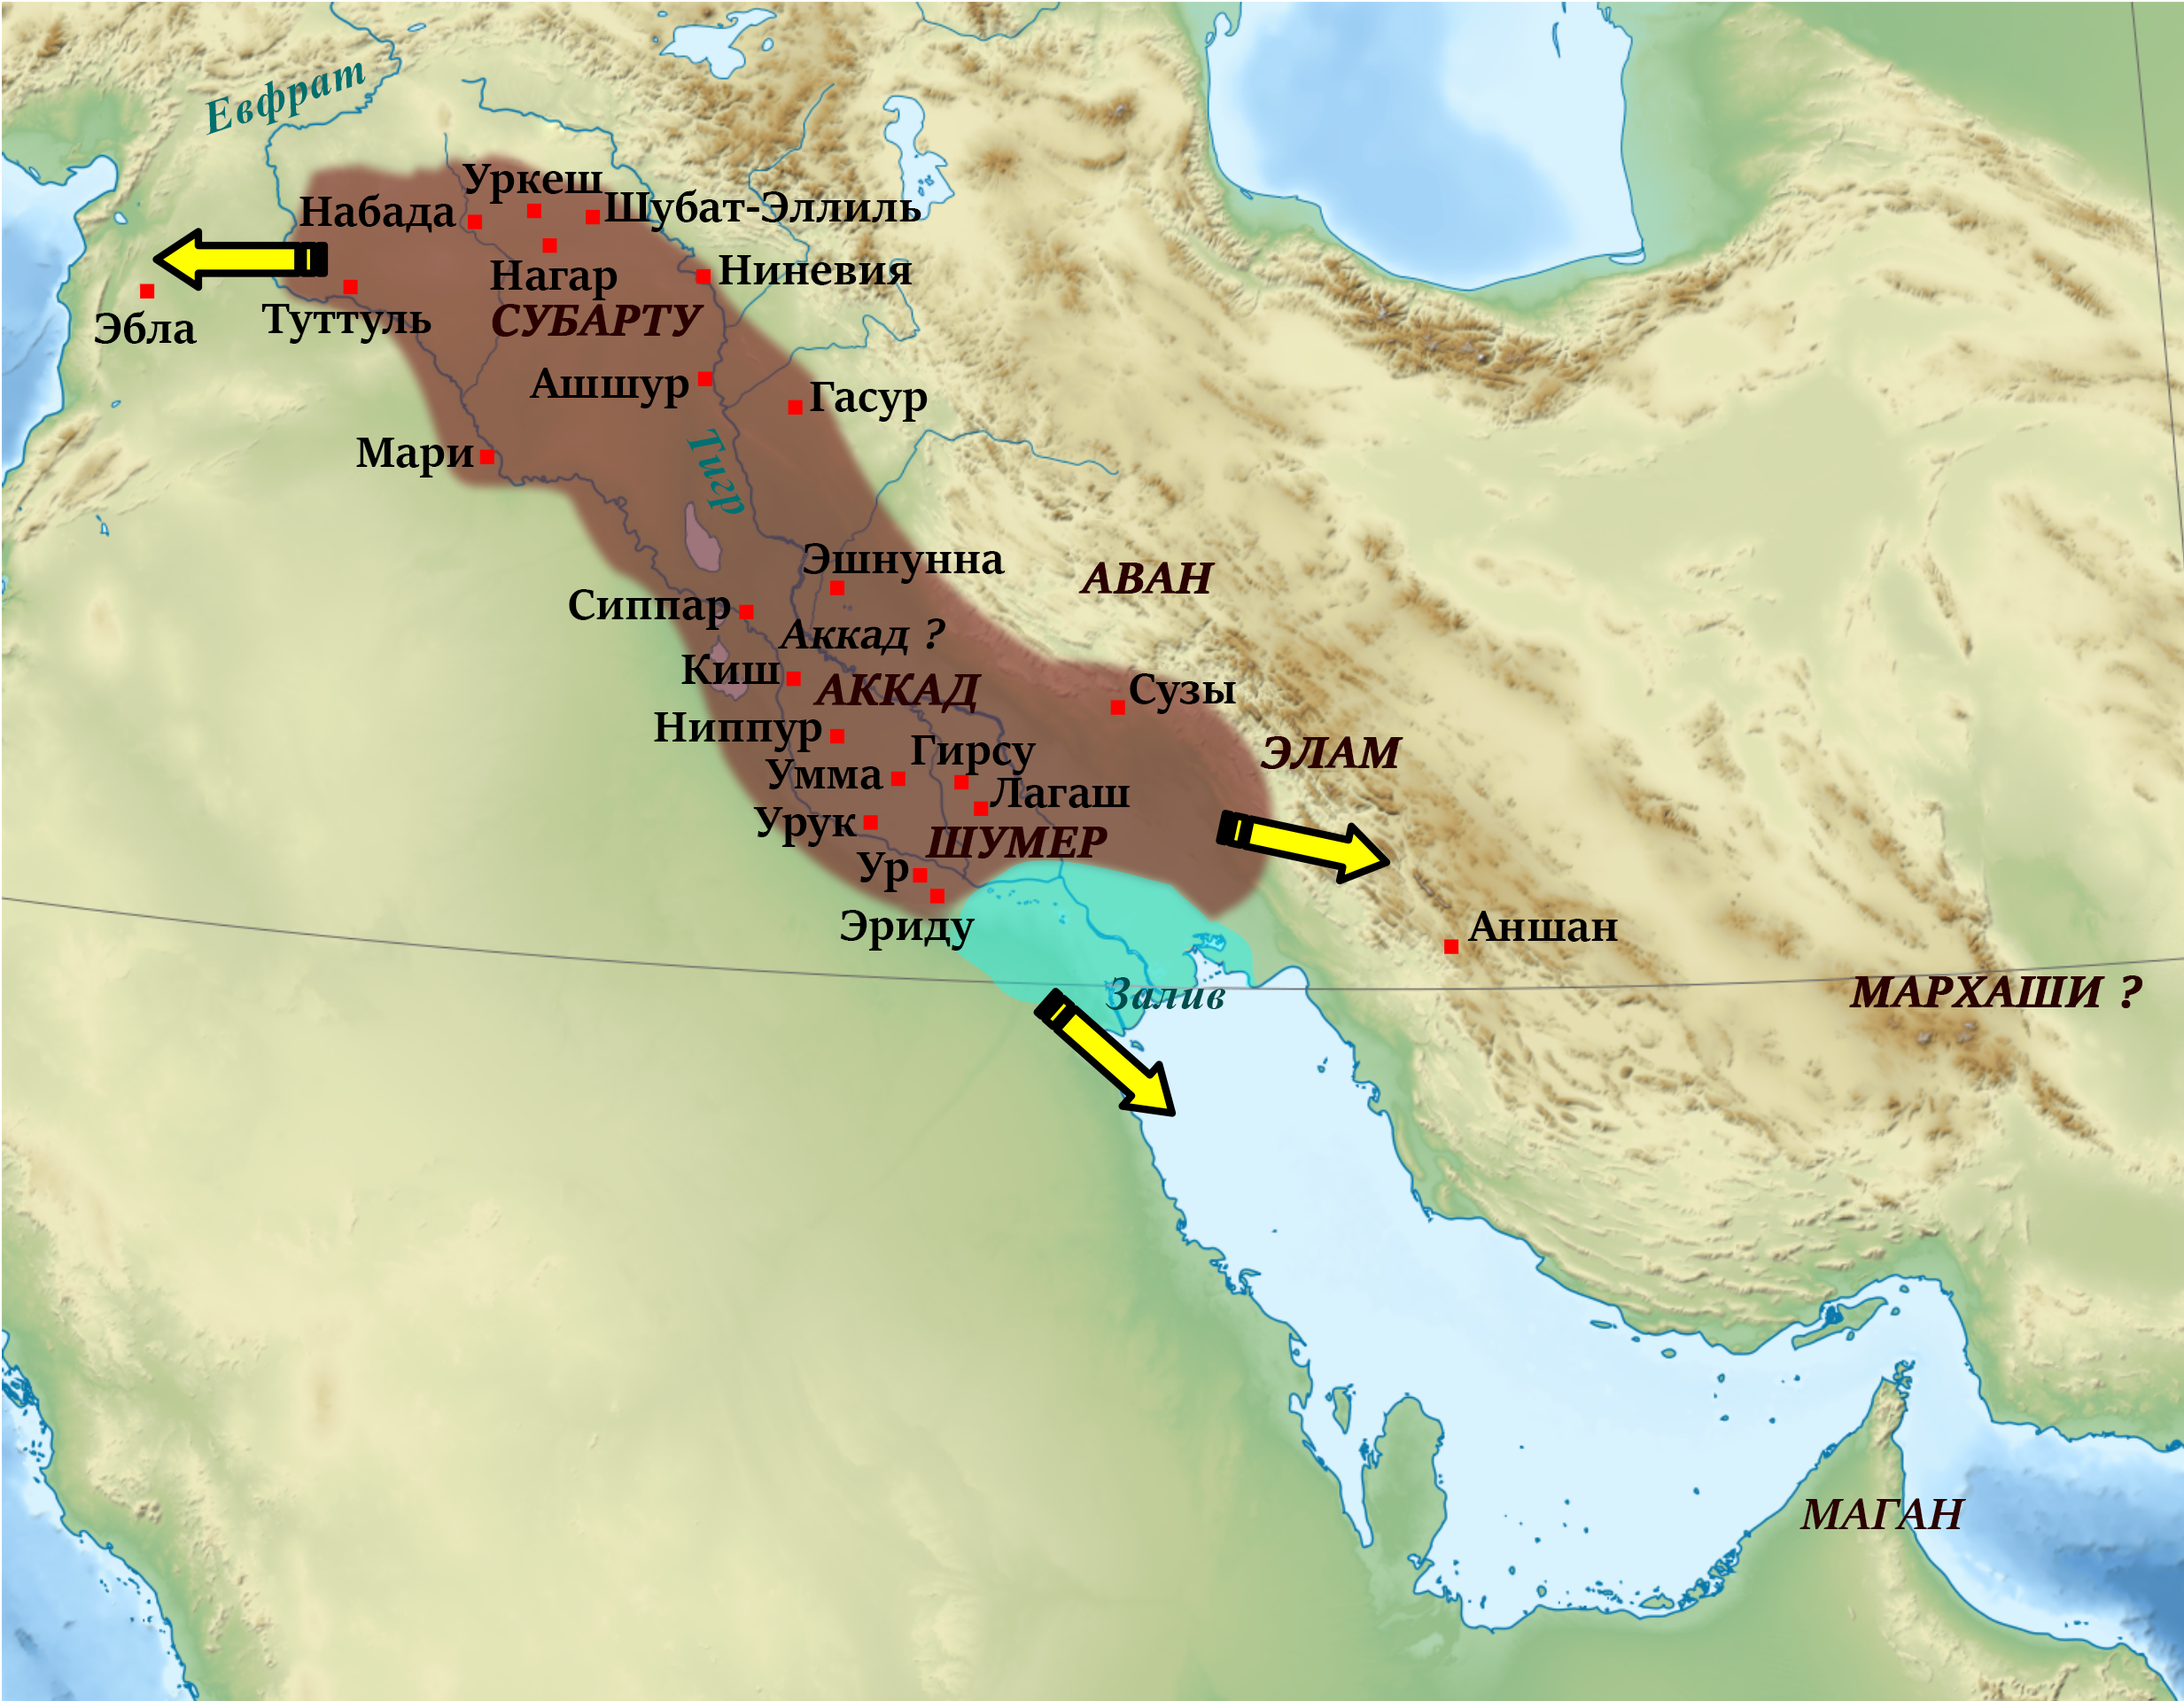 Древние месопотамские цивилизации (статья) | Академия Хана